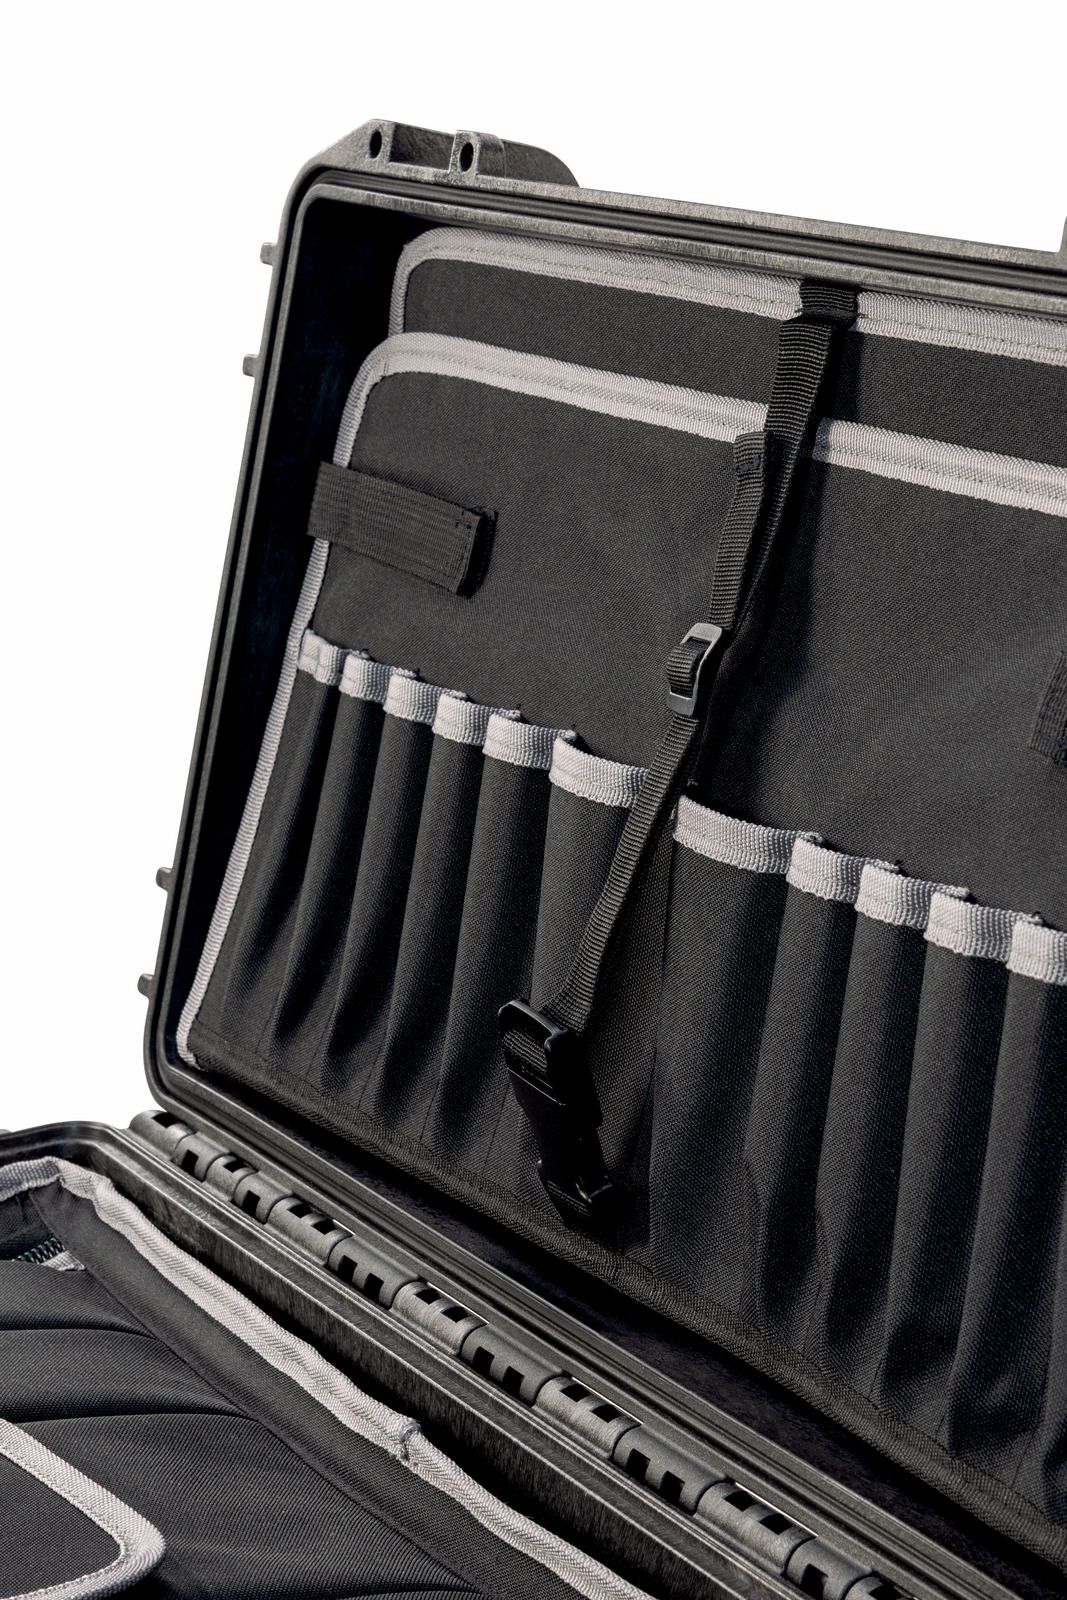 картинка Инструментальный водонепроницаемый бокс-чемодан на колёсах, PARAT PROTECT 30-S Roll 6520000391  от магазина "Элит-инструмент"